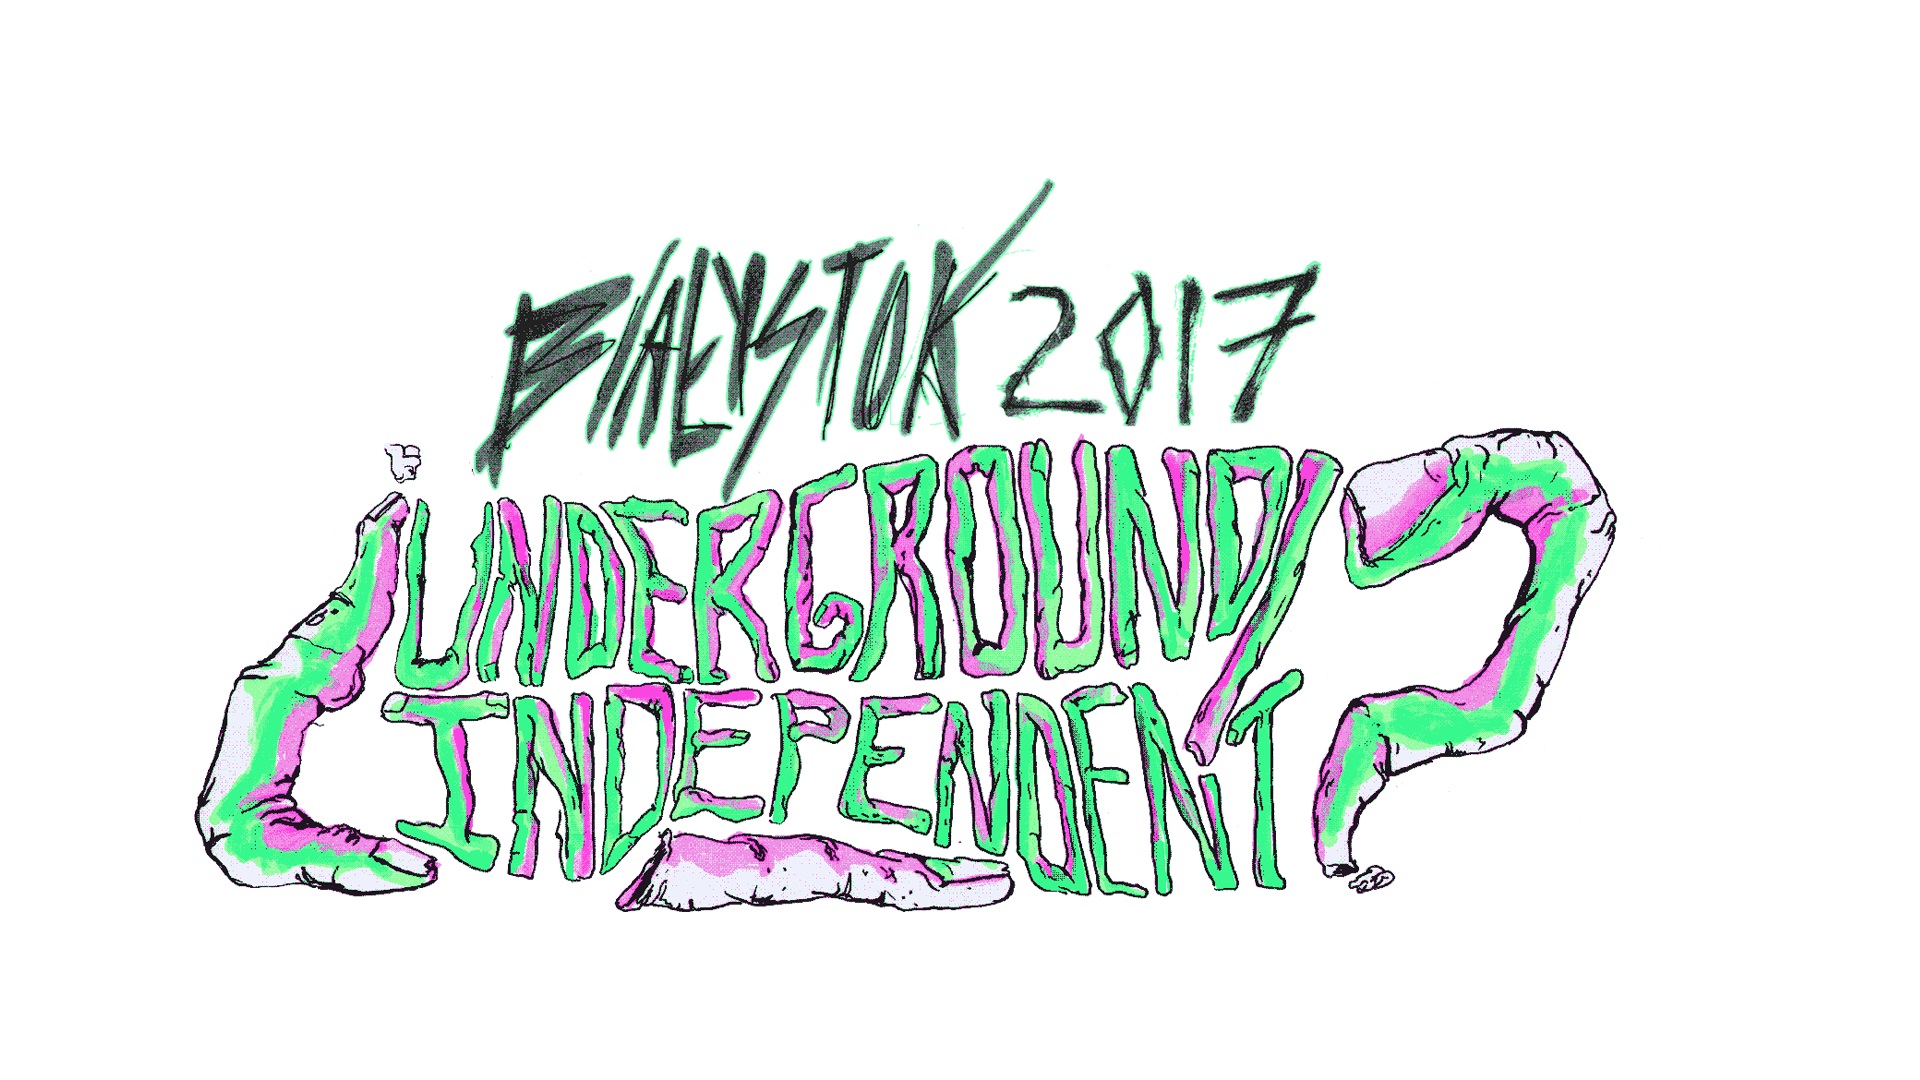 Białystok 2017 Underground Independent